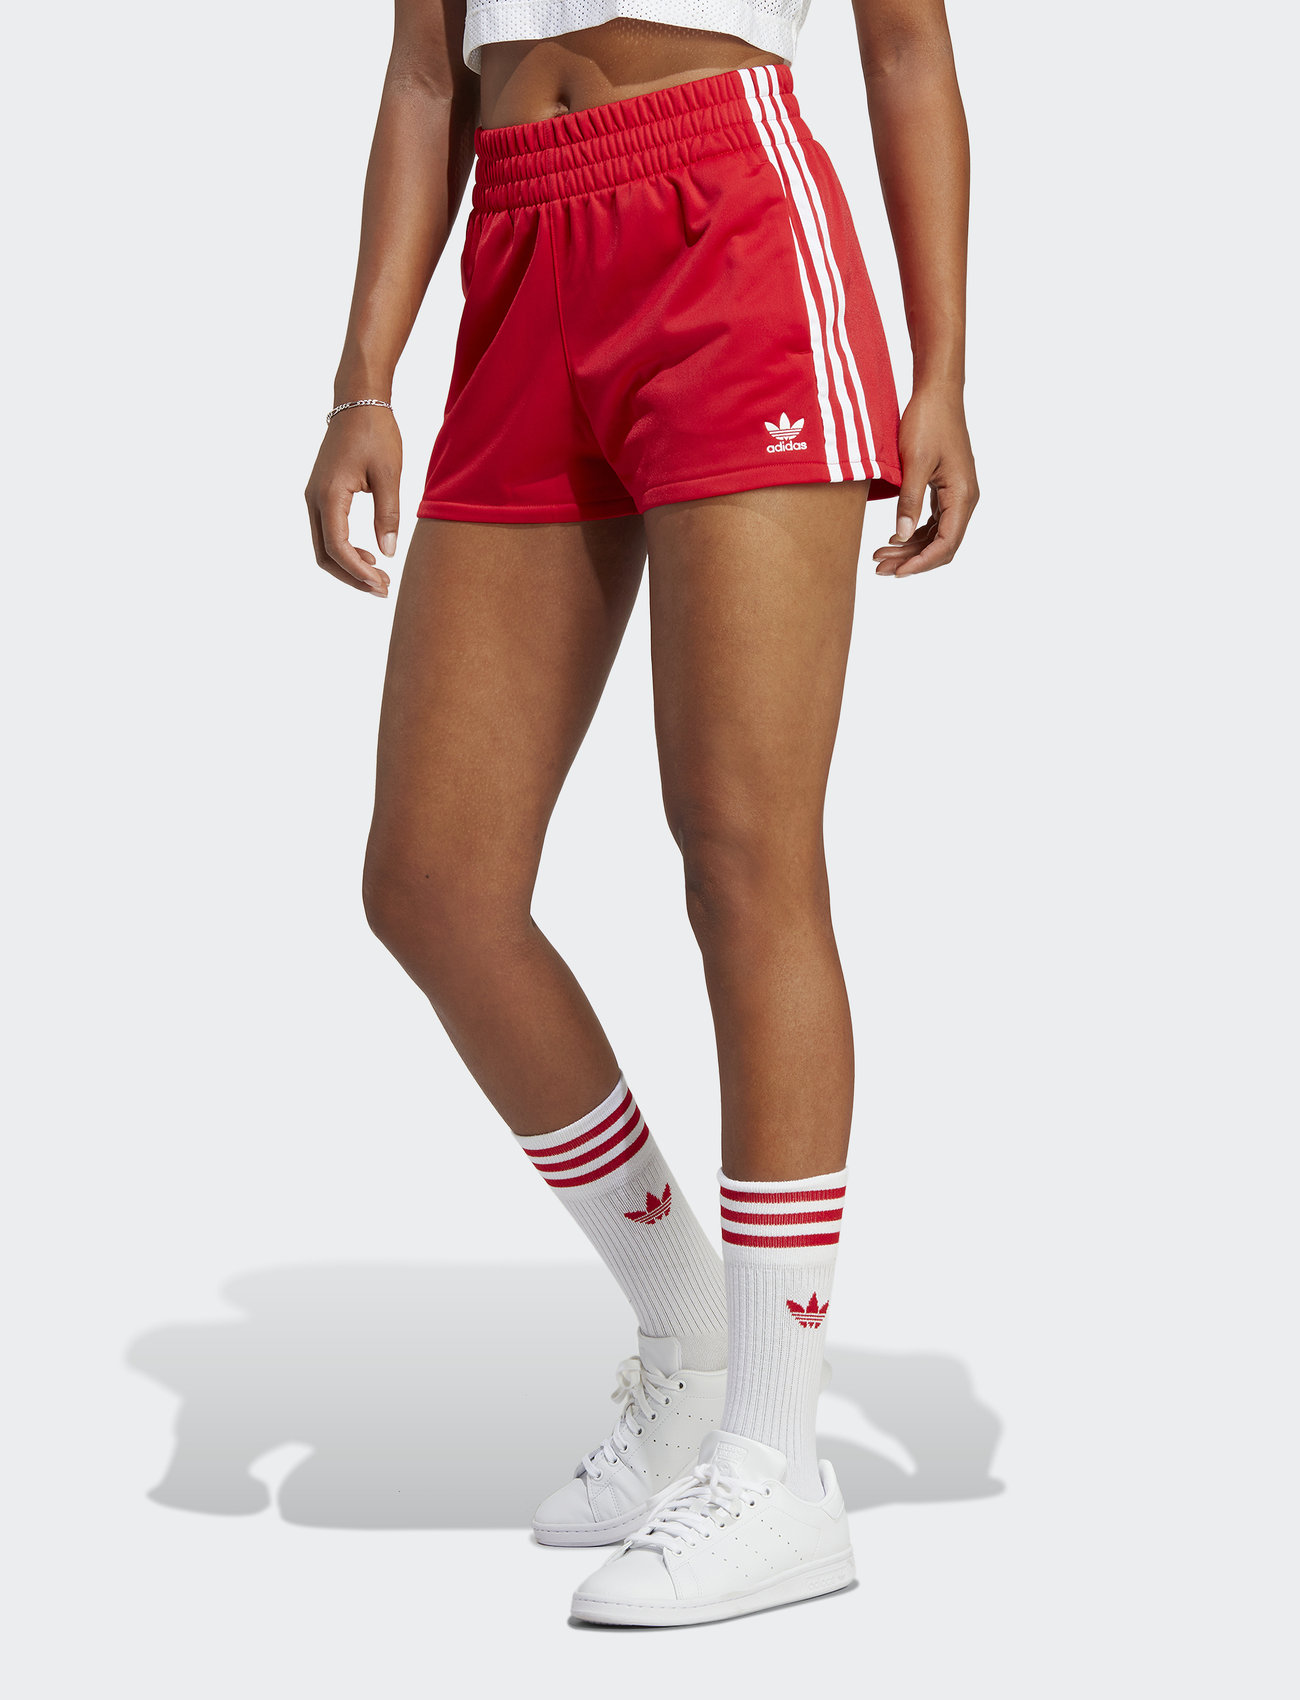 Tijdreeksen Beugel Beheren adidas Originals 3-stripes Shorts - Korte broeken | Boozt.com